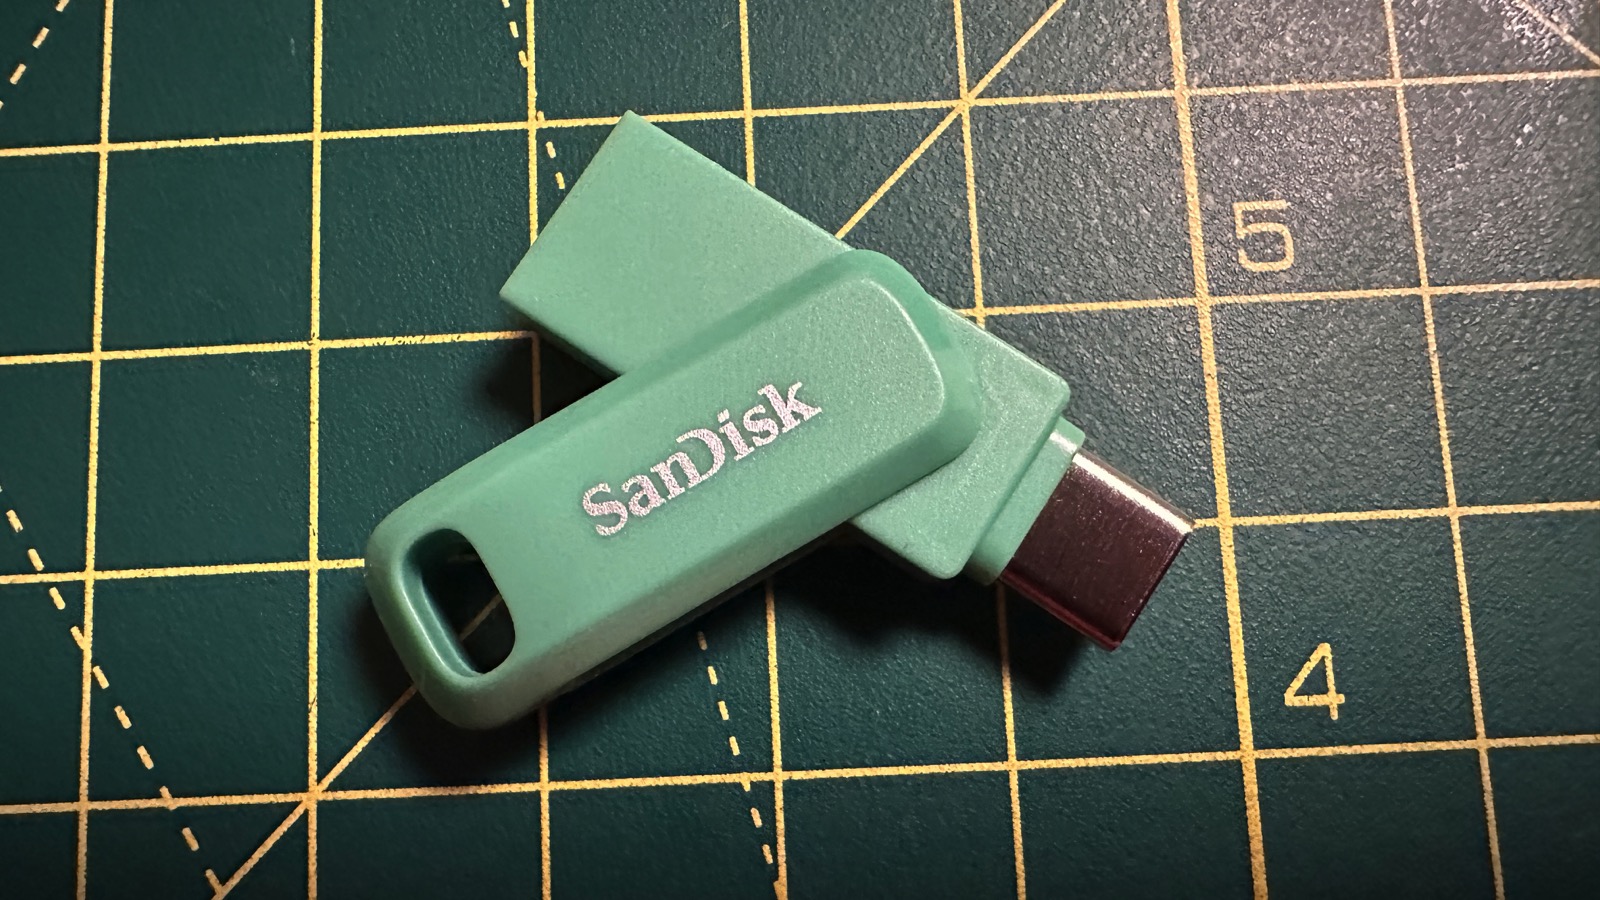 SanDisk Ultra 128 Go : meilleur prix et actualités - Les Numériques